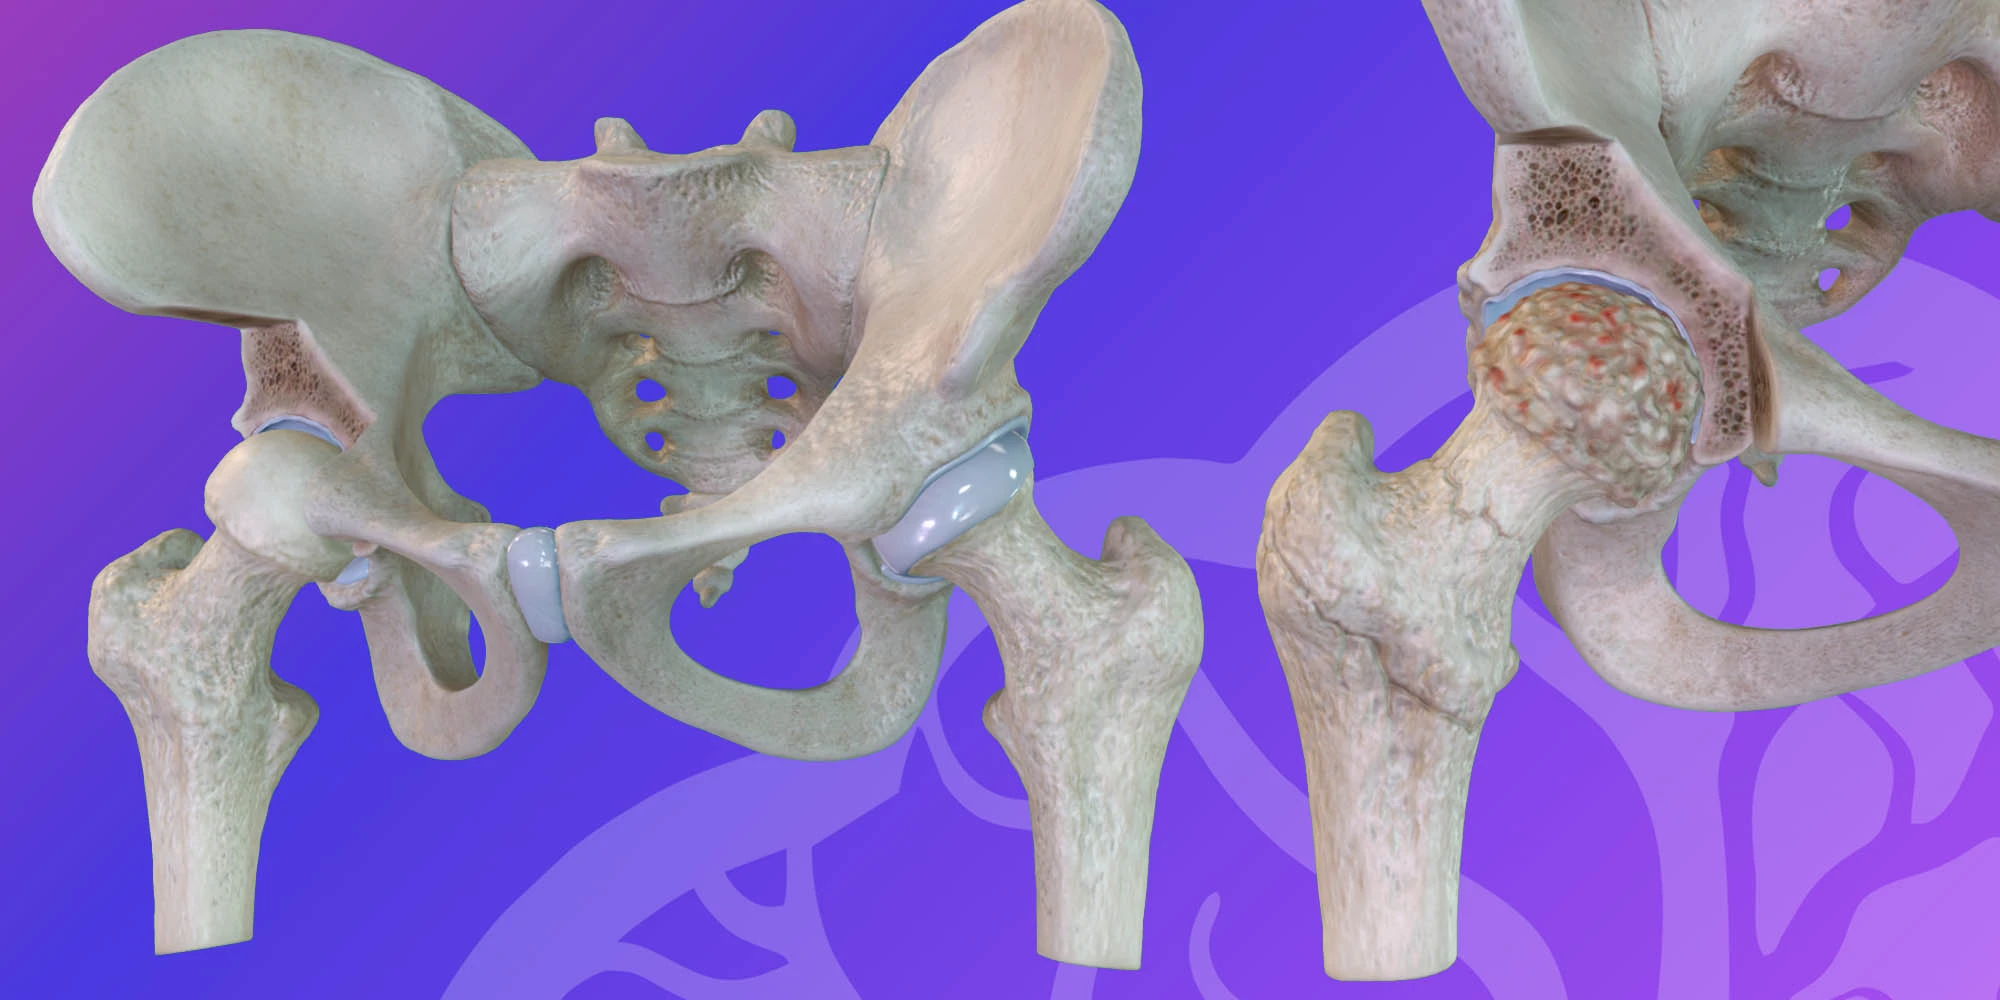 Pelvis hip joint osteoarthritis image